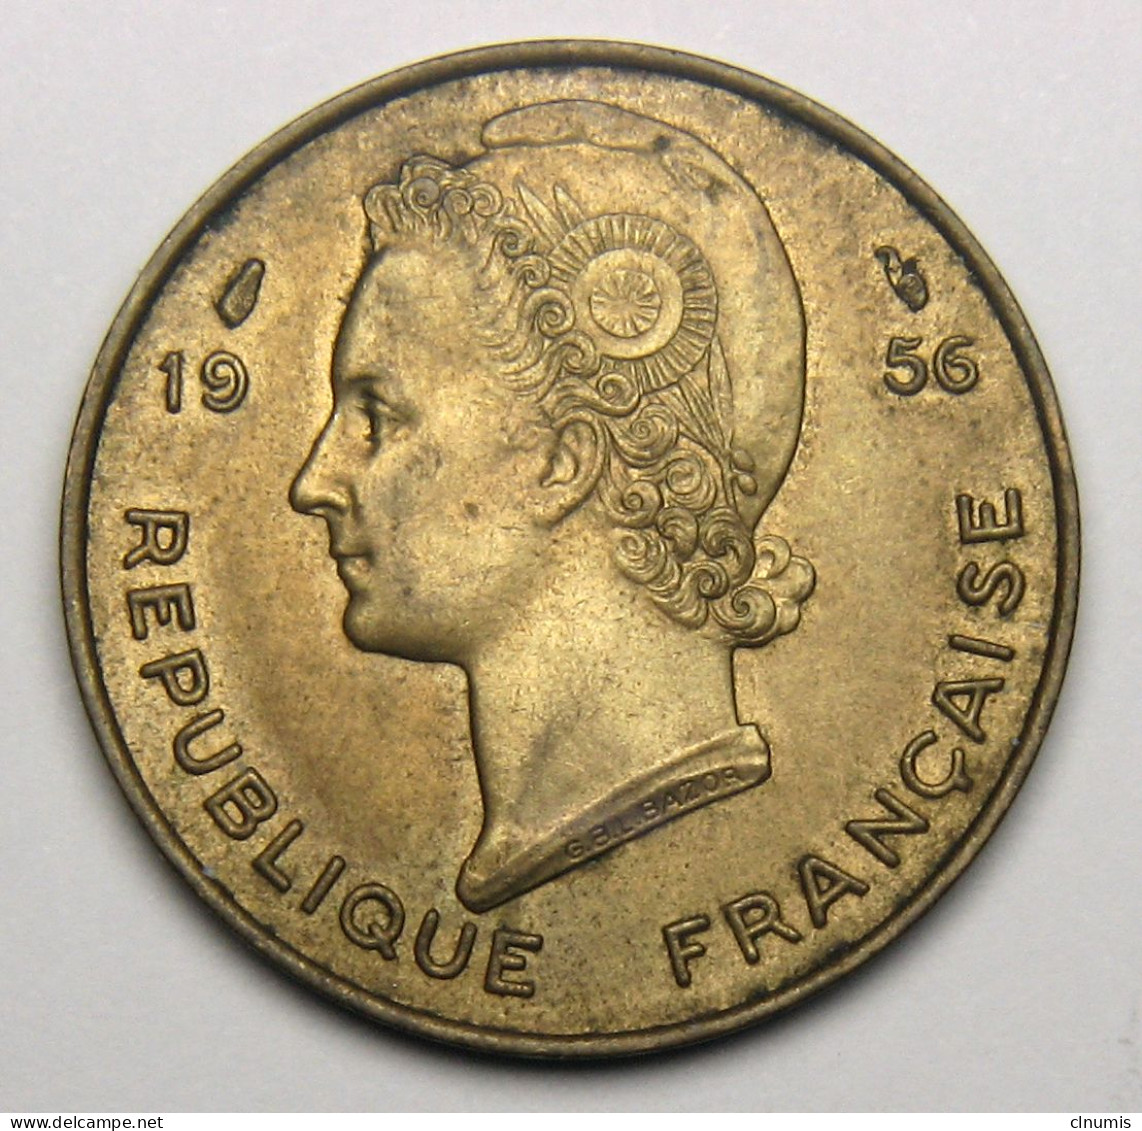 10 Francs Afrique Occidentale Française, République Française 1956 - Afrique Occidentale Française